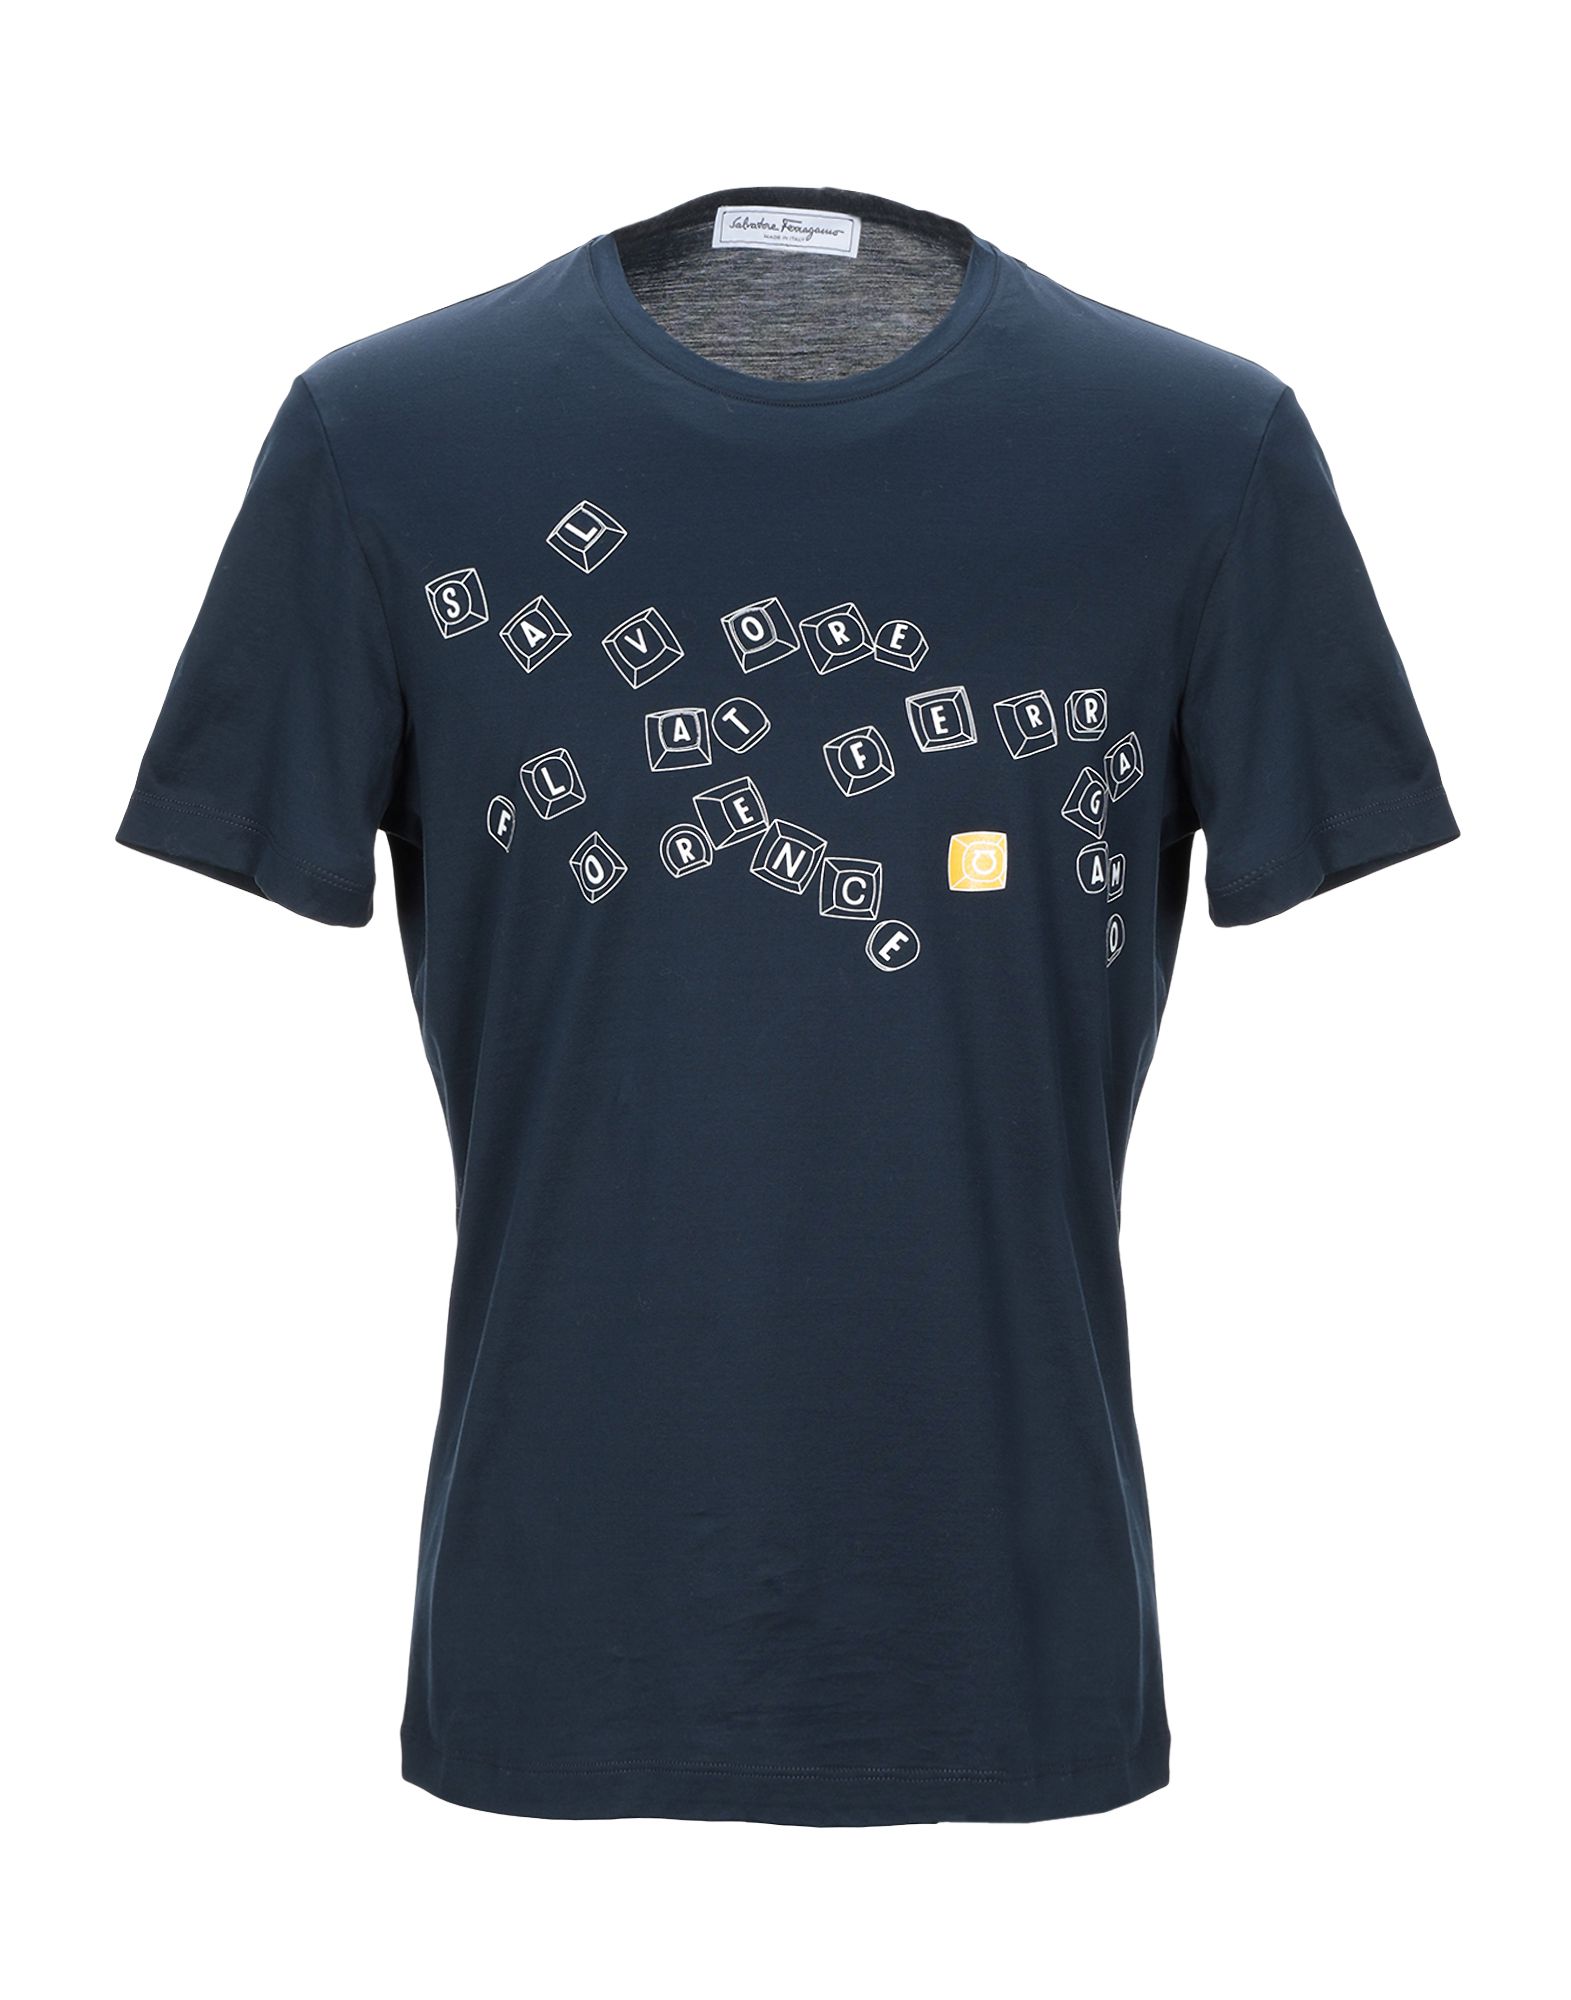 SALVATORE FERRAGAMO T-shirts - Item 12343552